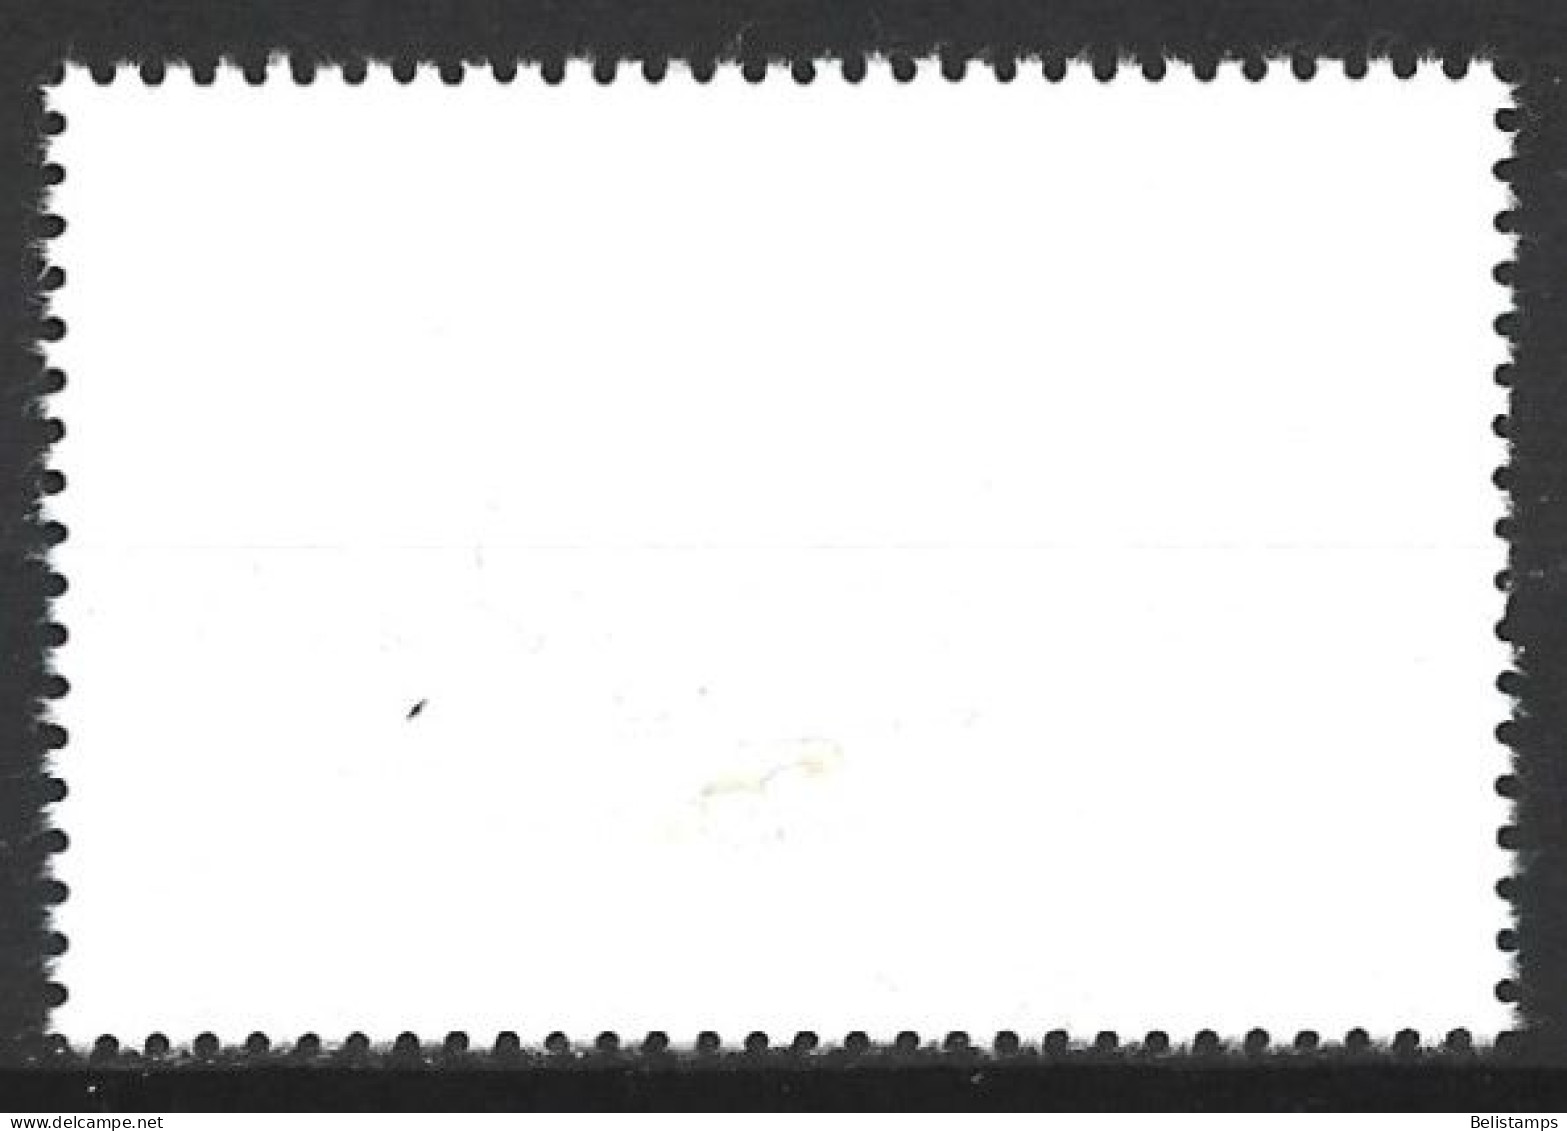 Cuba 1977. Scott #2161 (U) Intl. Airmail Service, 50th Anniv. - Usati